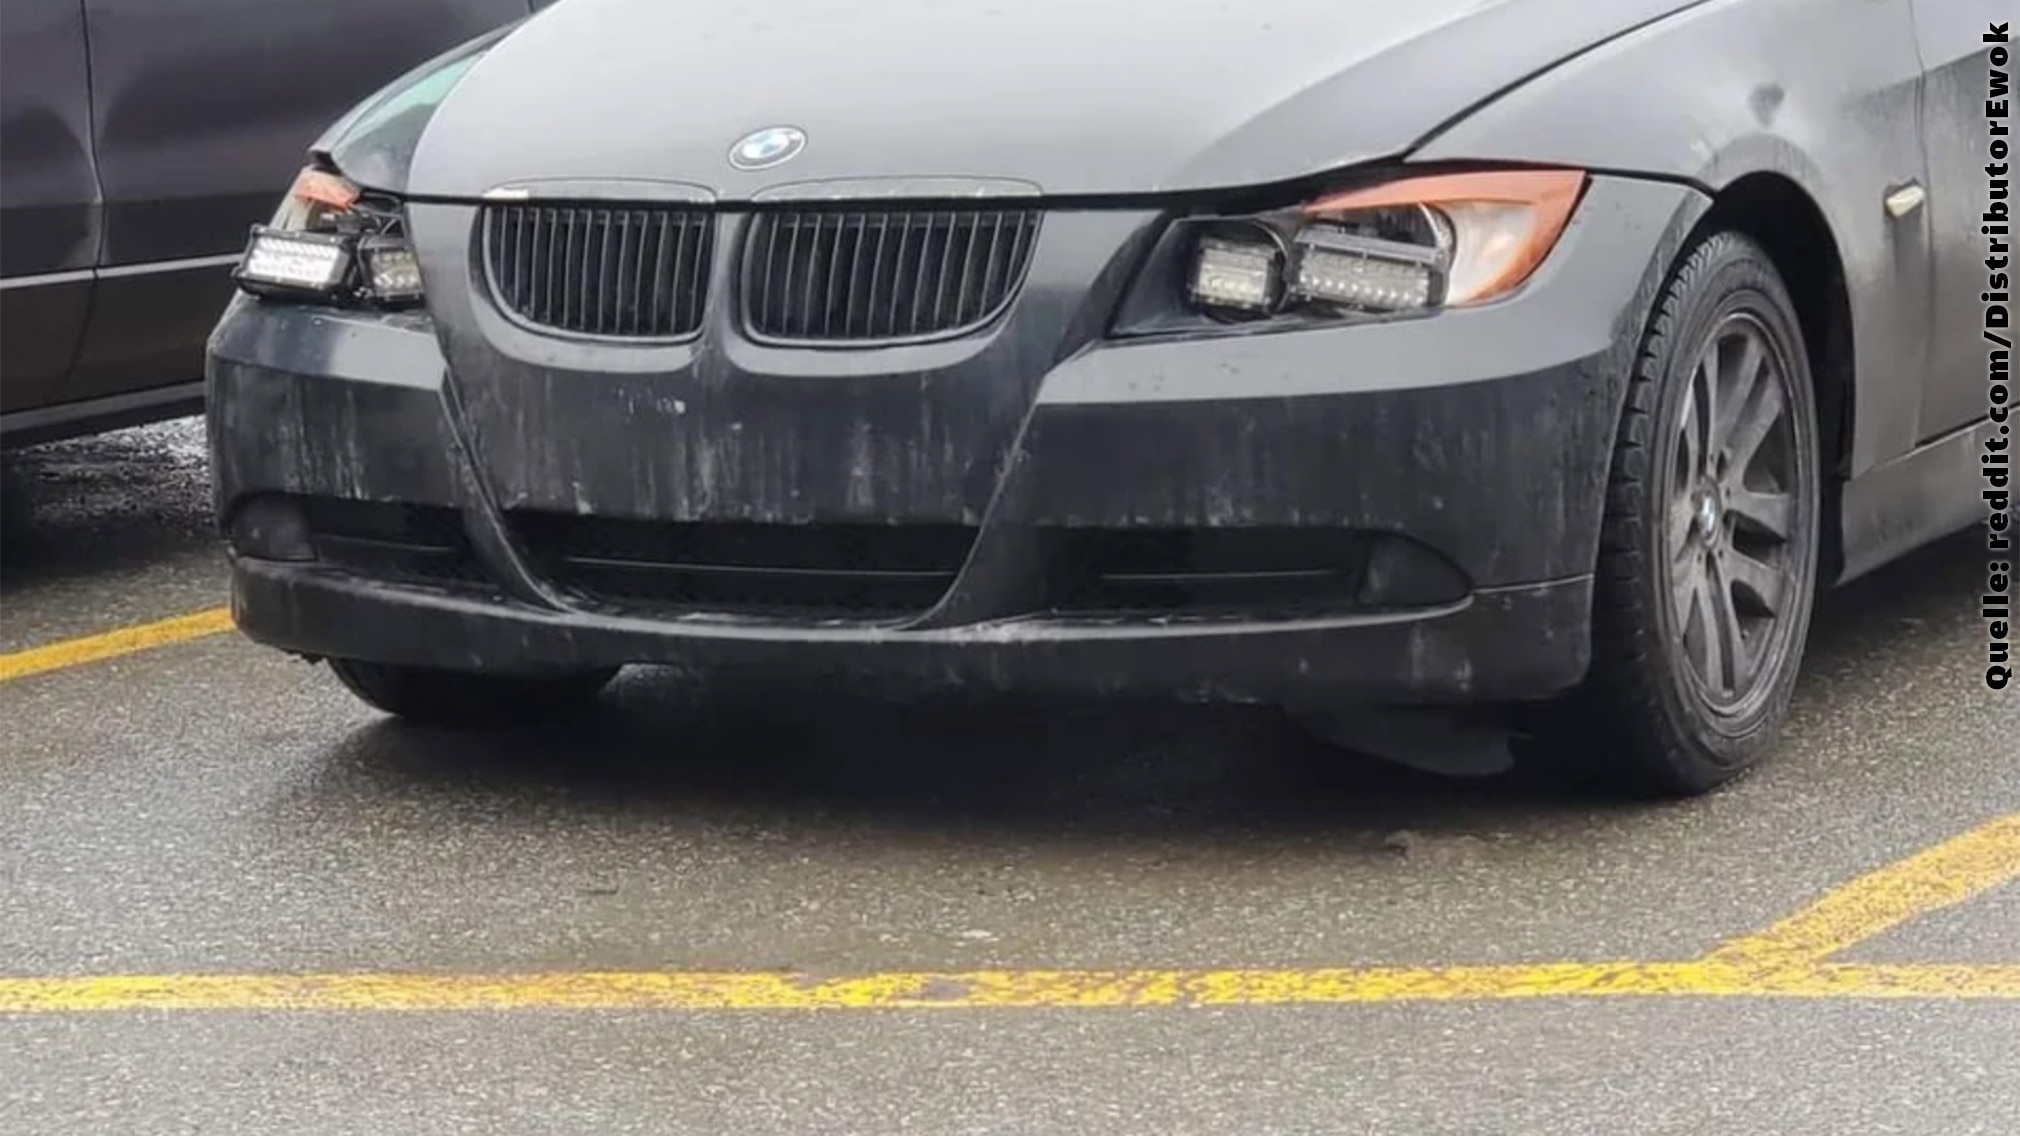 Schön ist anders: BMW 3er mit schlimmen Do-it-yourself-LEDs - AUTO BILD